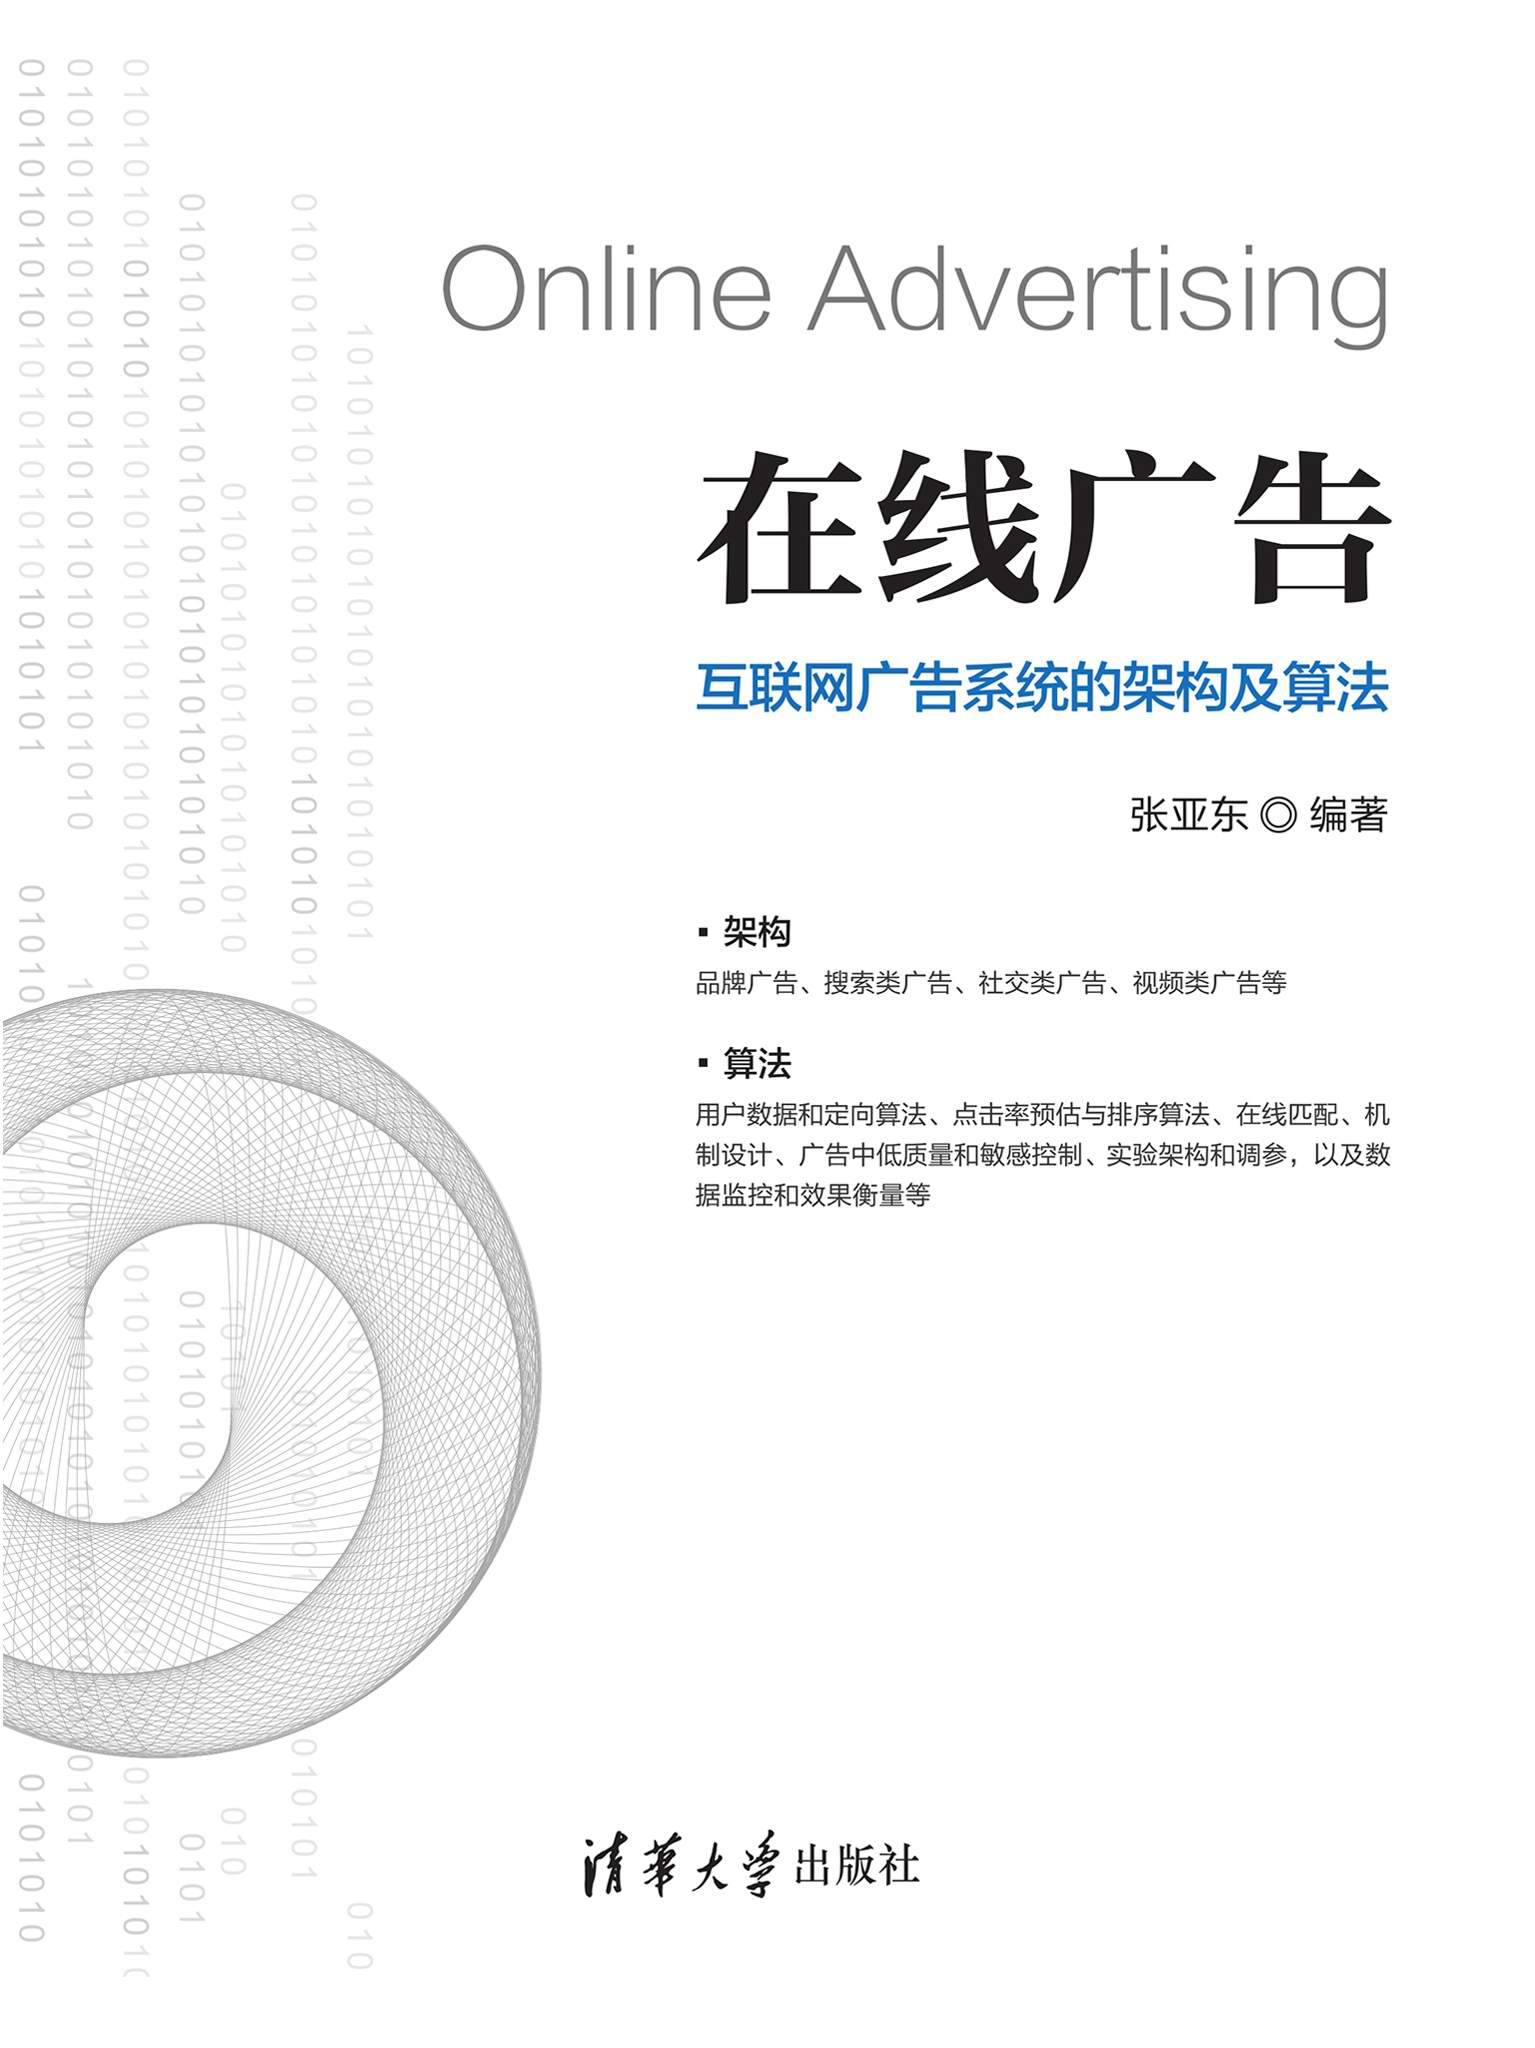 在线广告——互联网广告系统的架构及算法